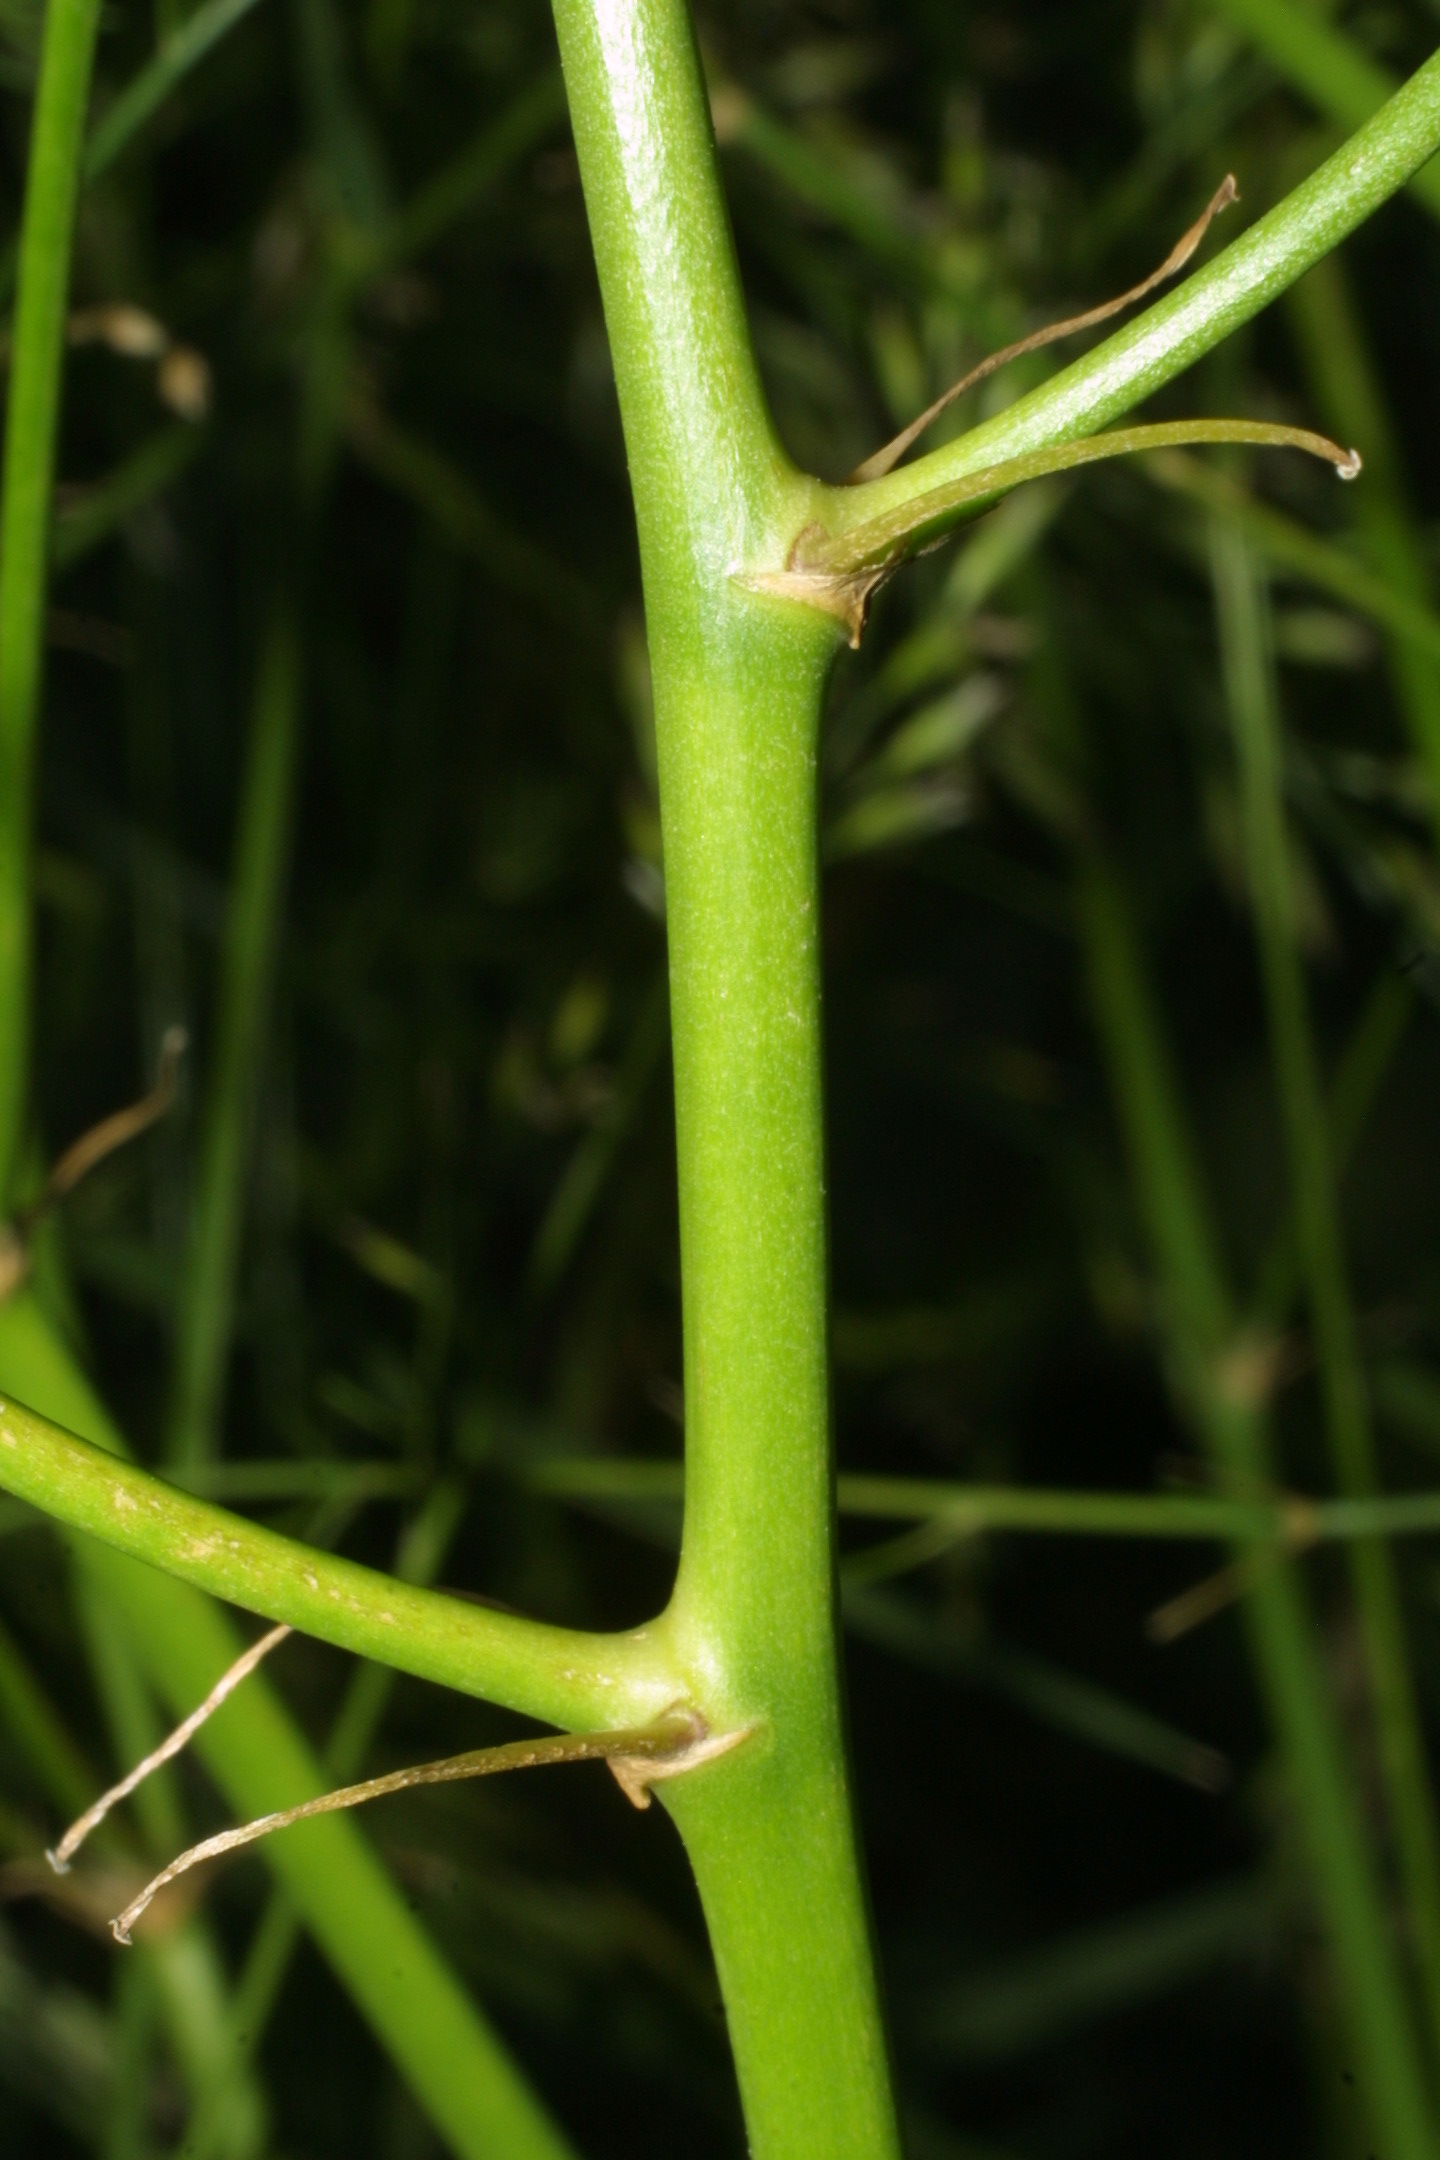 Plant stem. Черешки это что такое сельдирея. Стебли стволики. Стебель растения. Гладкий стебель.